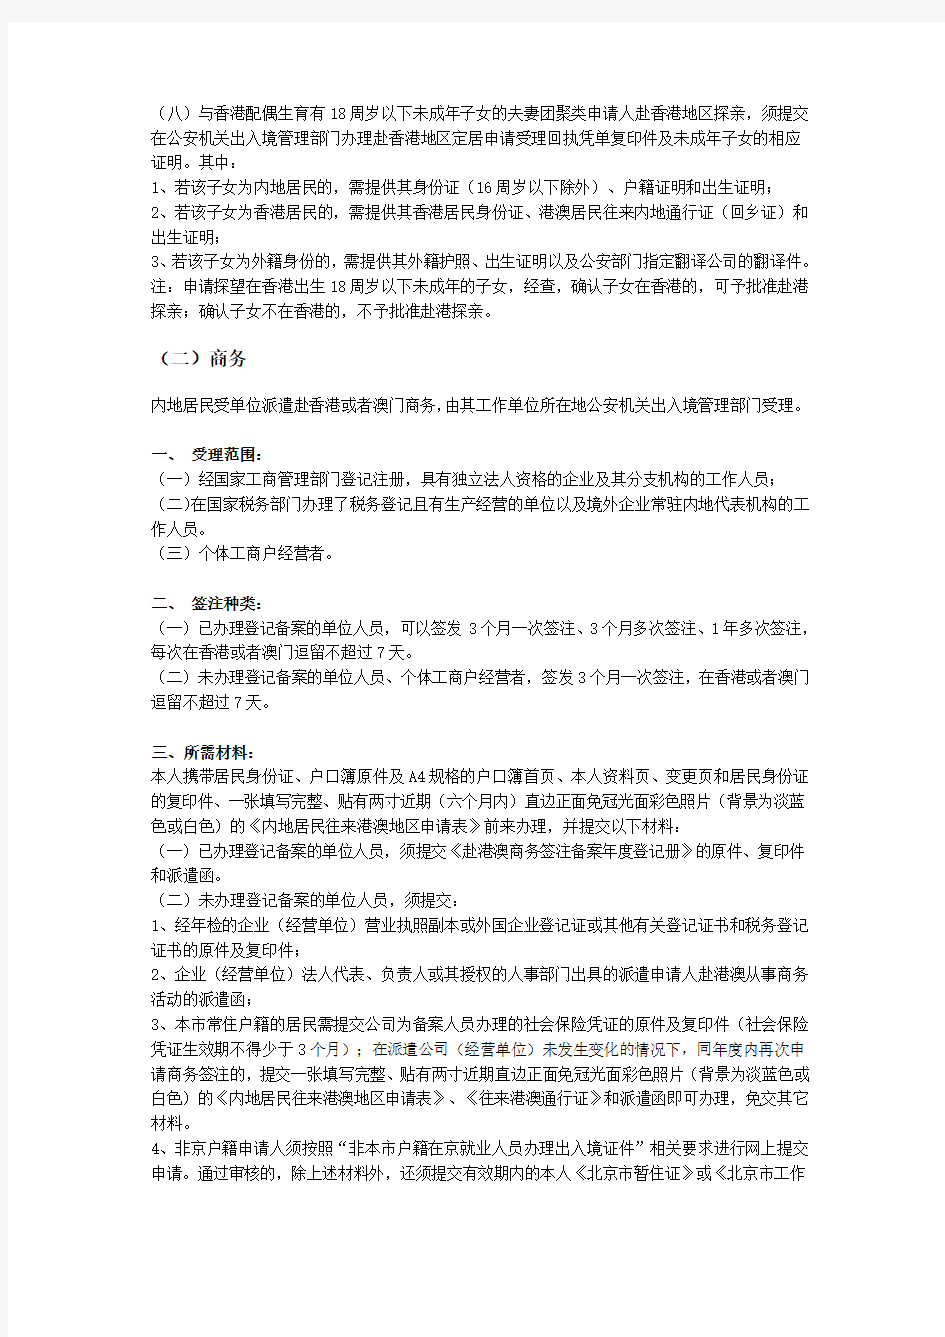 北京居民首次办理港澳通行证手续及所需材料